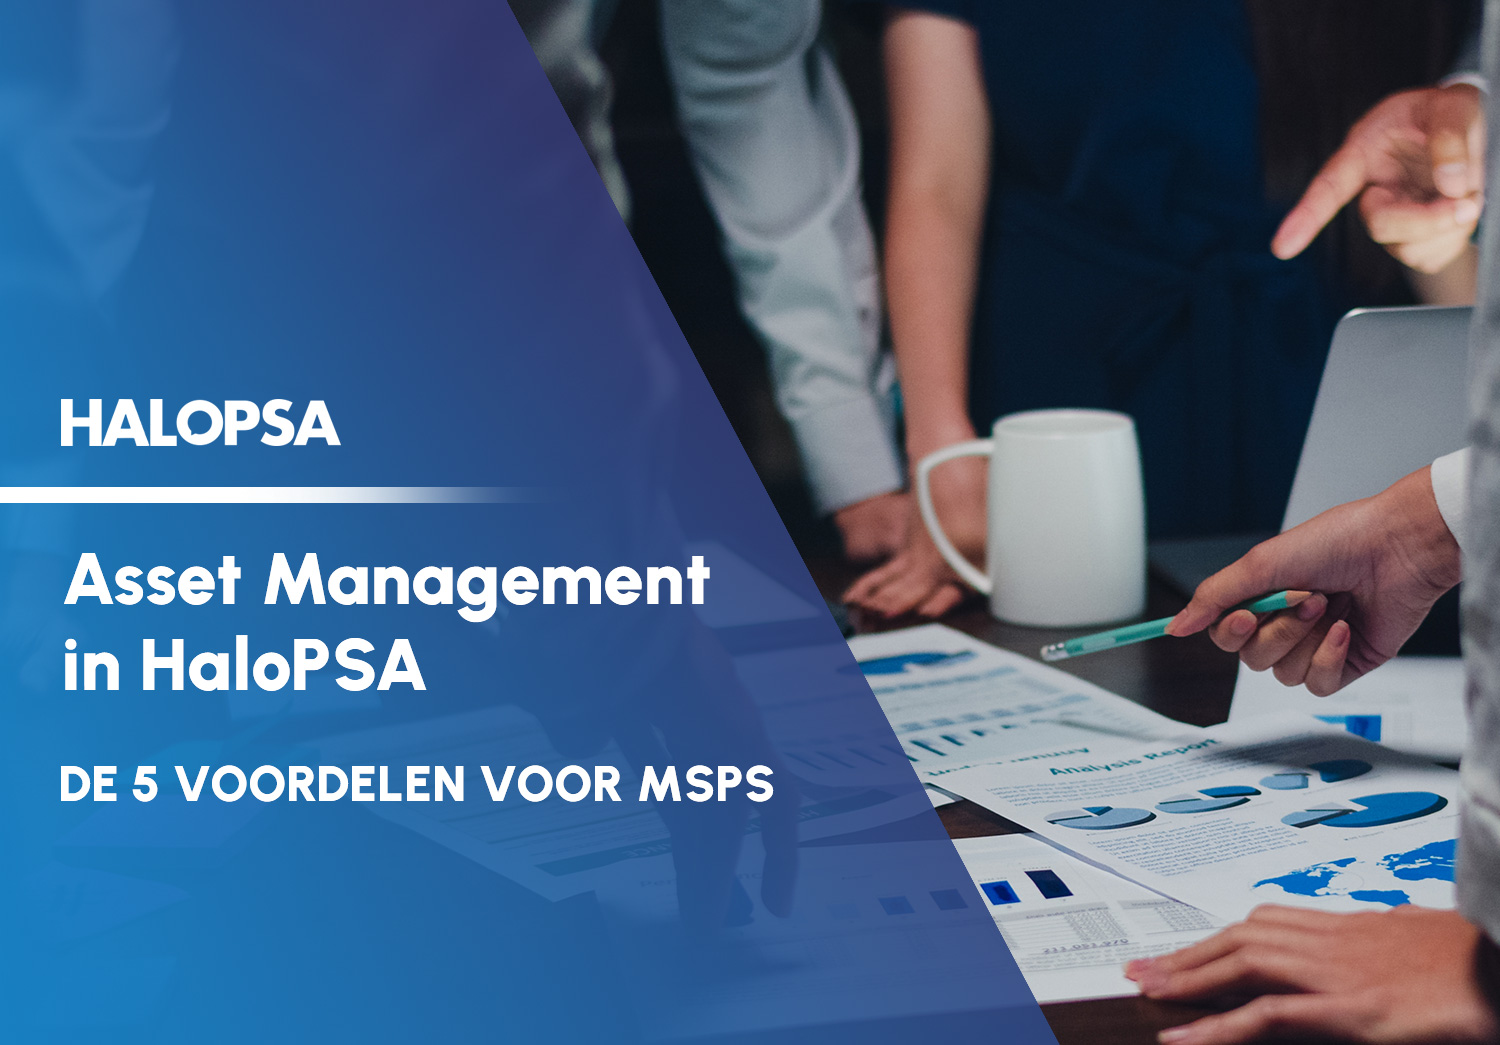 Asset Management in HaloPSA: de 5 voordelen voor MSPs